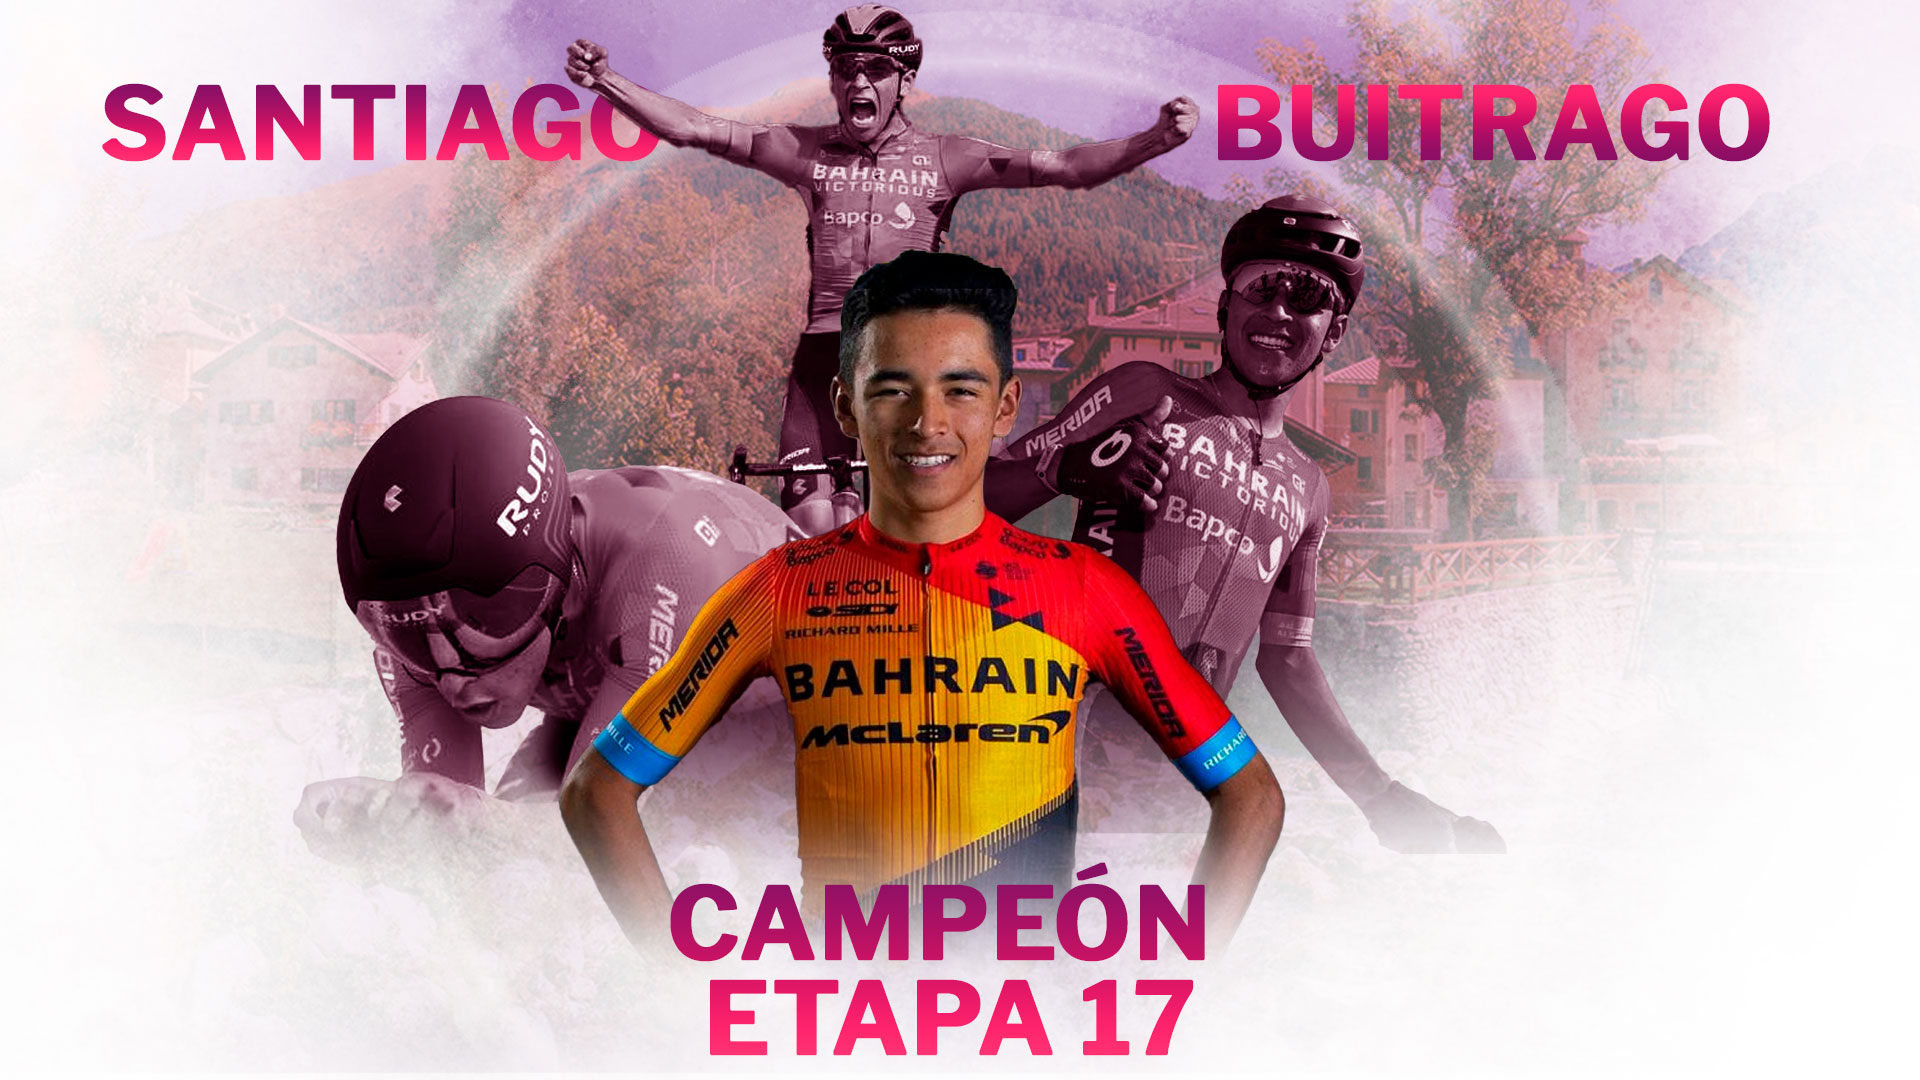 El colombiano se convirtió en el ciclista cafetero más joven en ganar una etapa de la tradicional carrera europea (Diseño a partir de fotografías, Jesús Aviles Ortiz/Infobae).